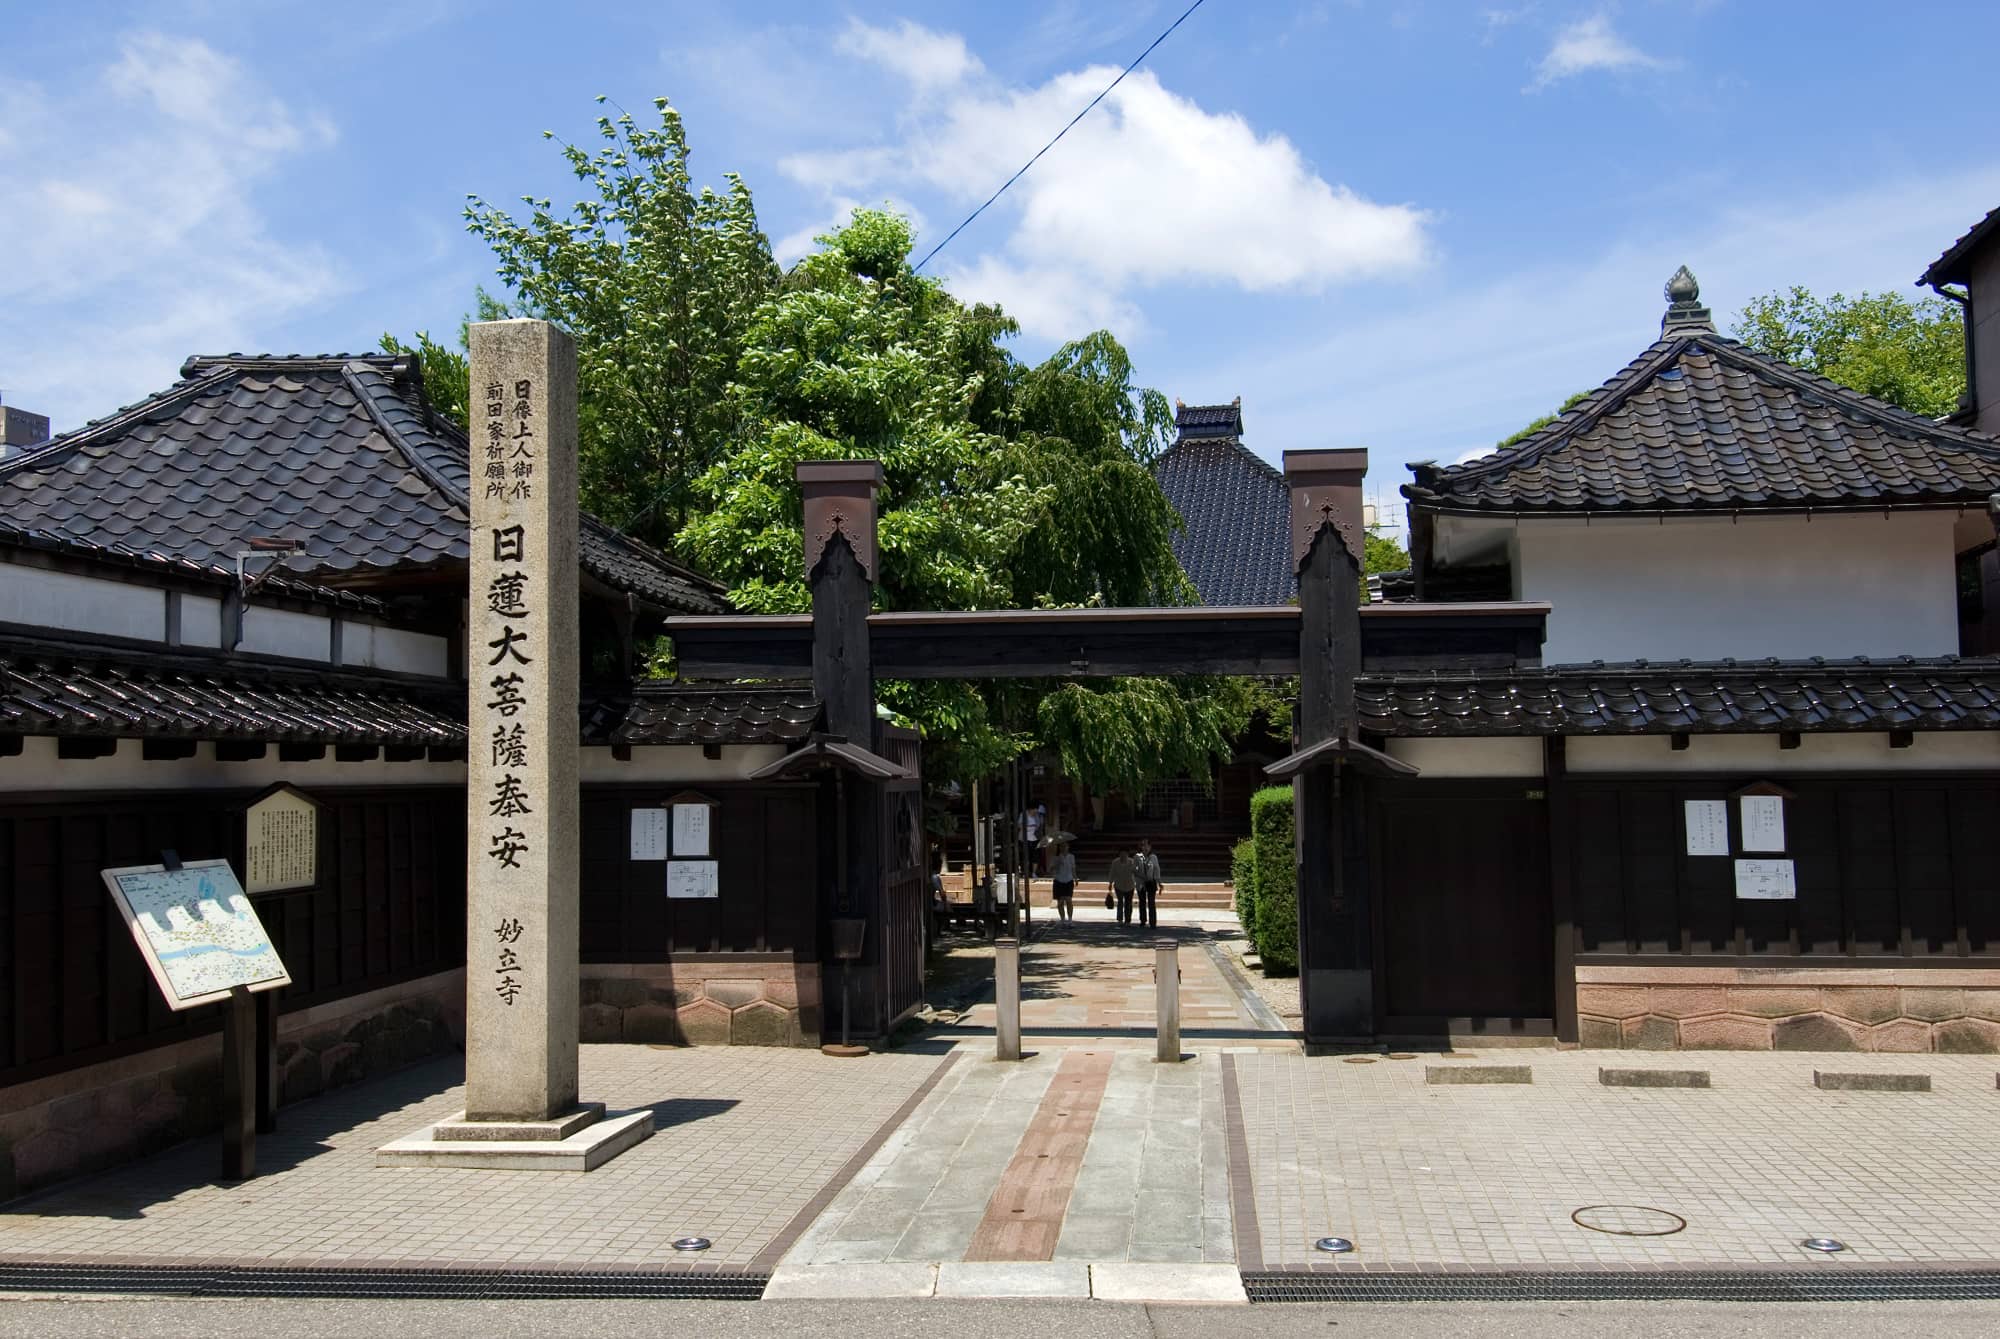 Myoryuji Temple (Ninja Temple)